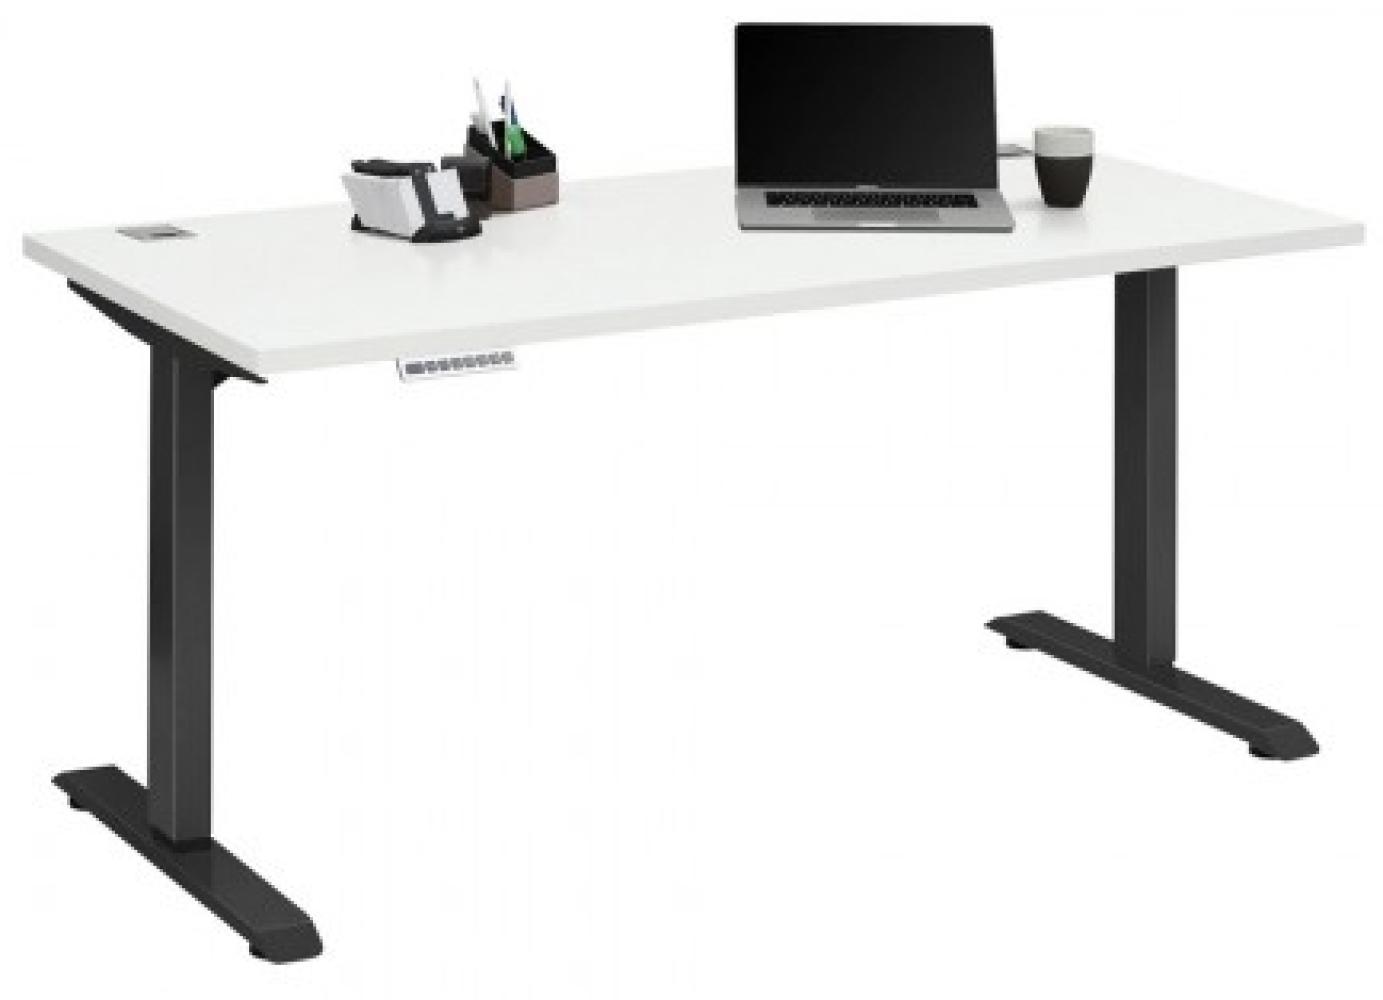 Maja Höhenverstellbarer Schreibtisch 5504 Metall anthrazit - weiß matt Bild 1